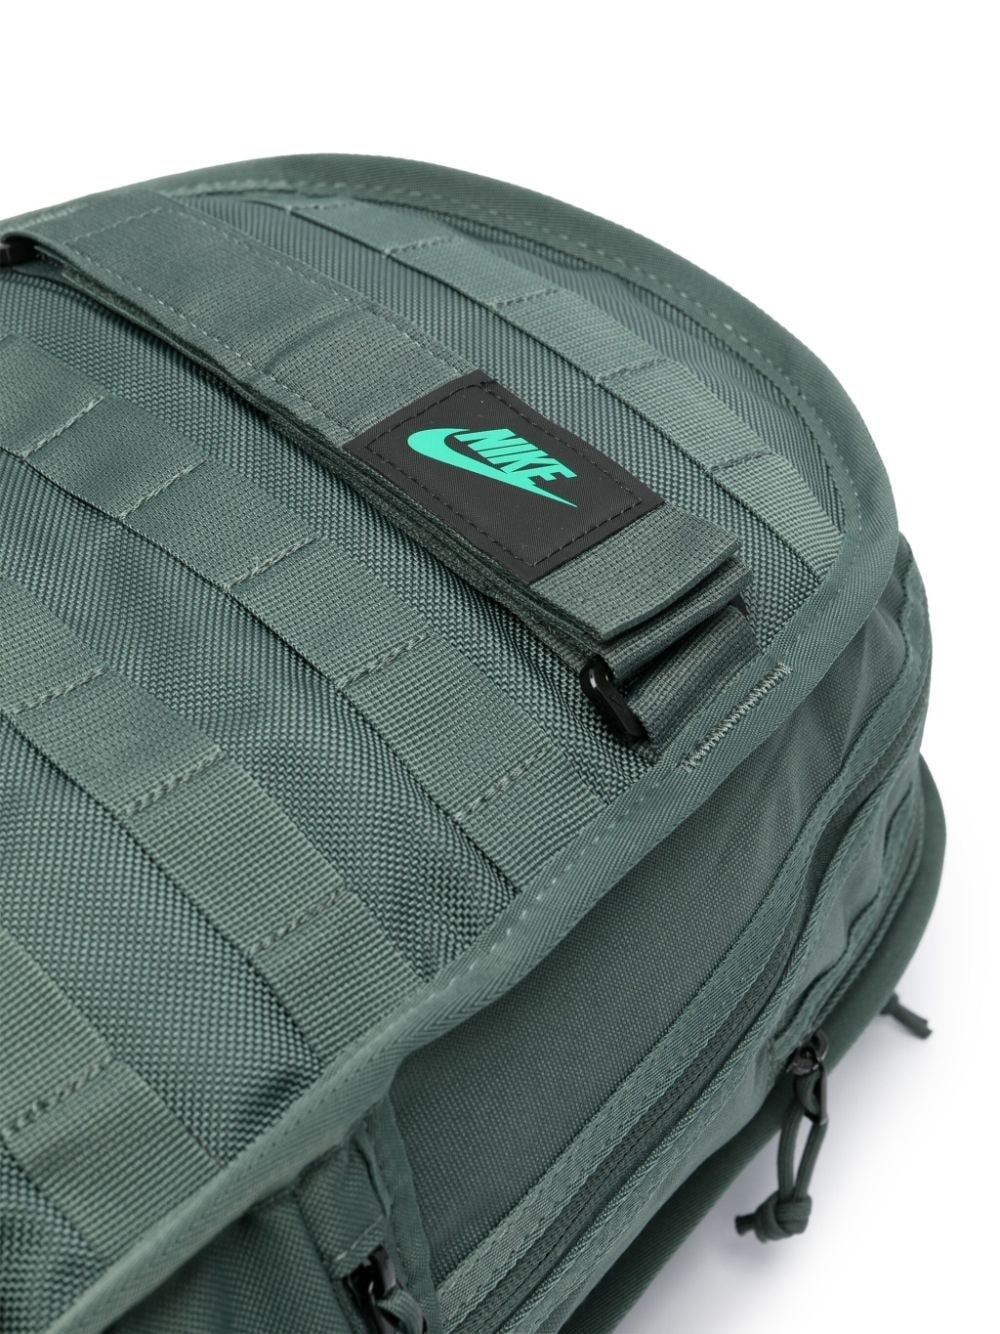 RPM loop-embellished backpack - 4